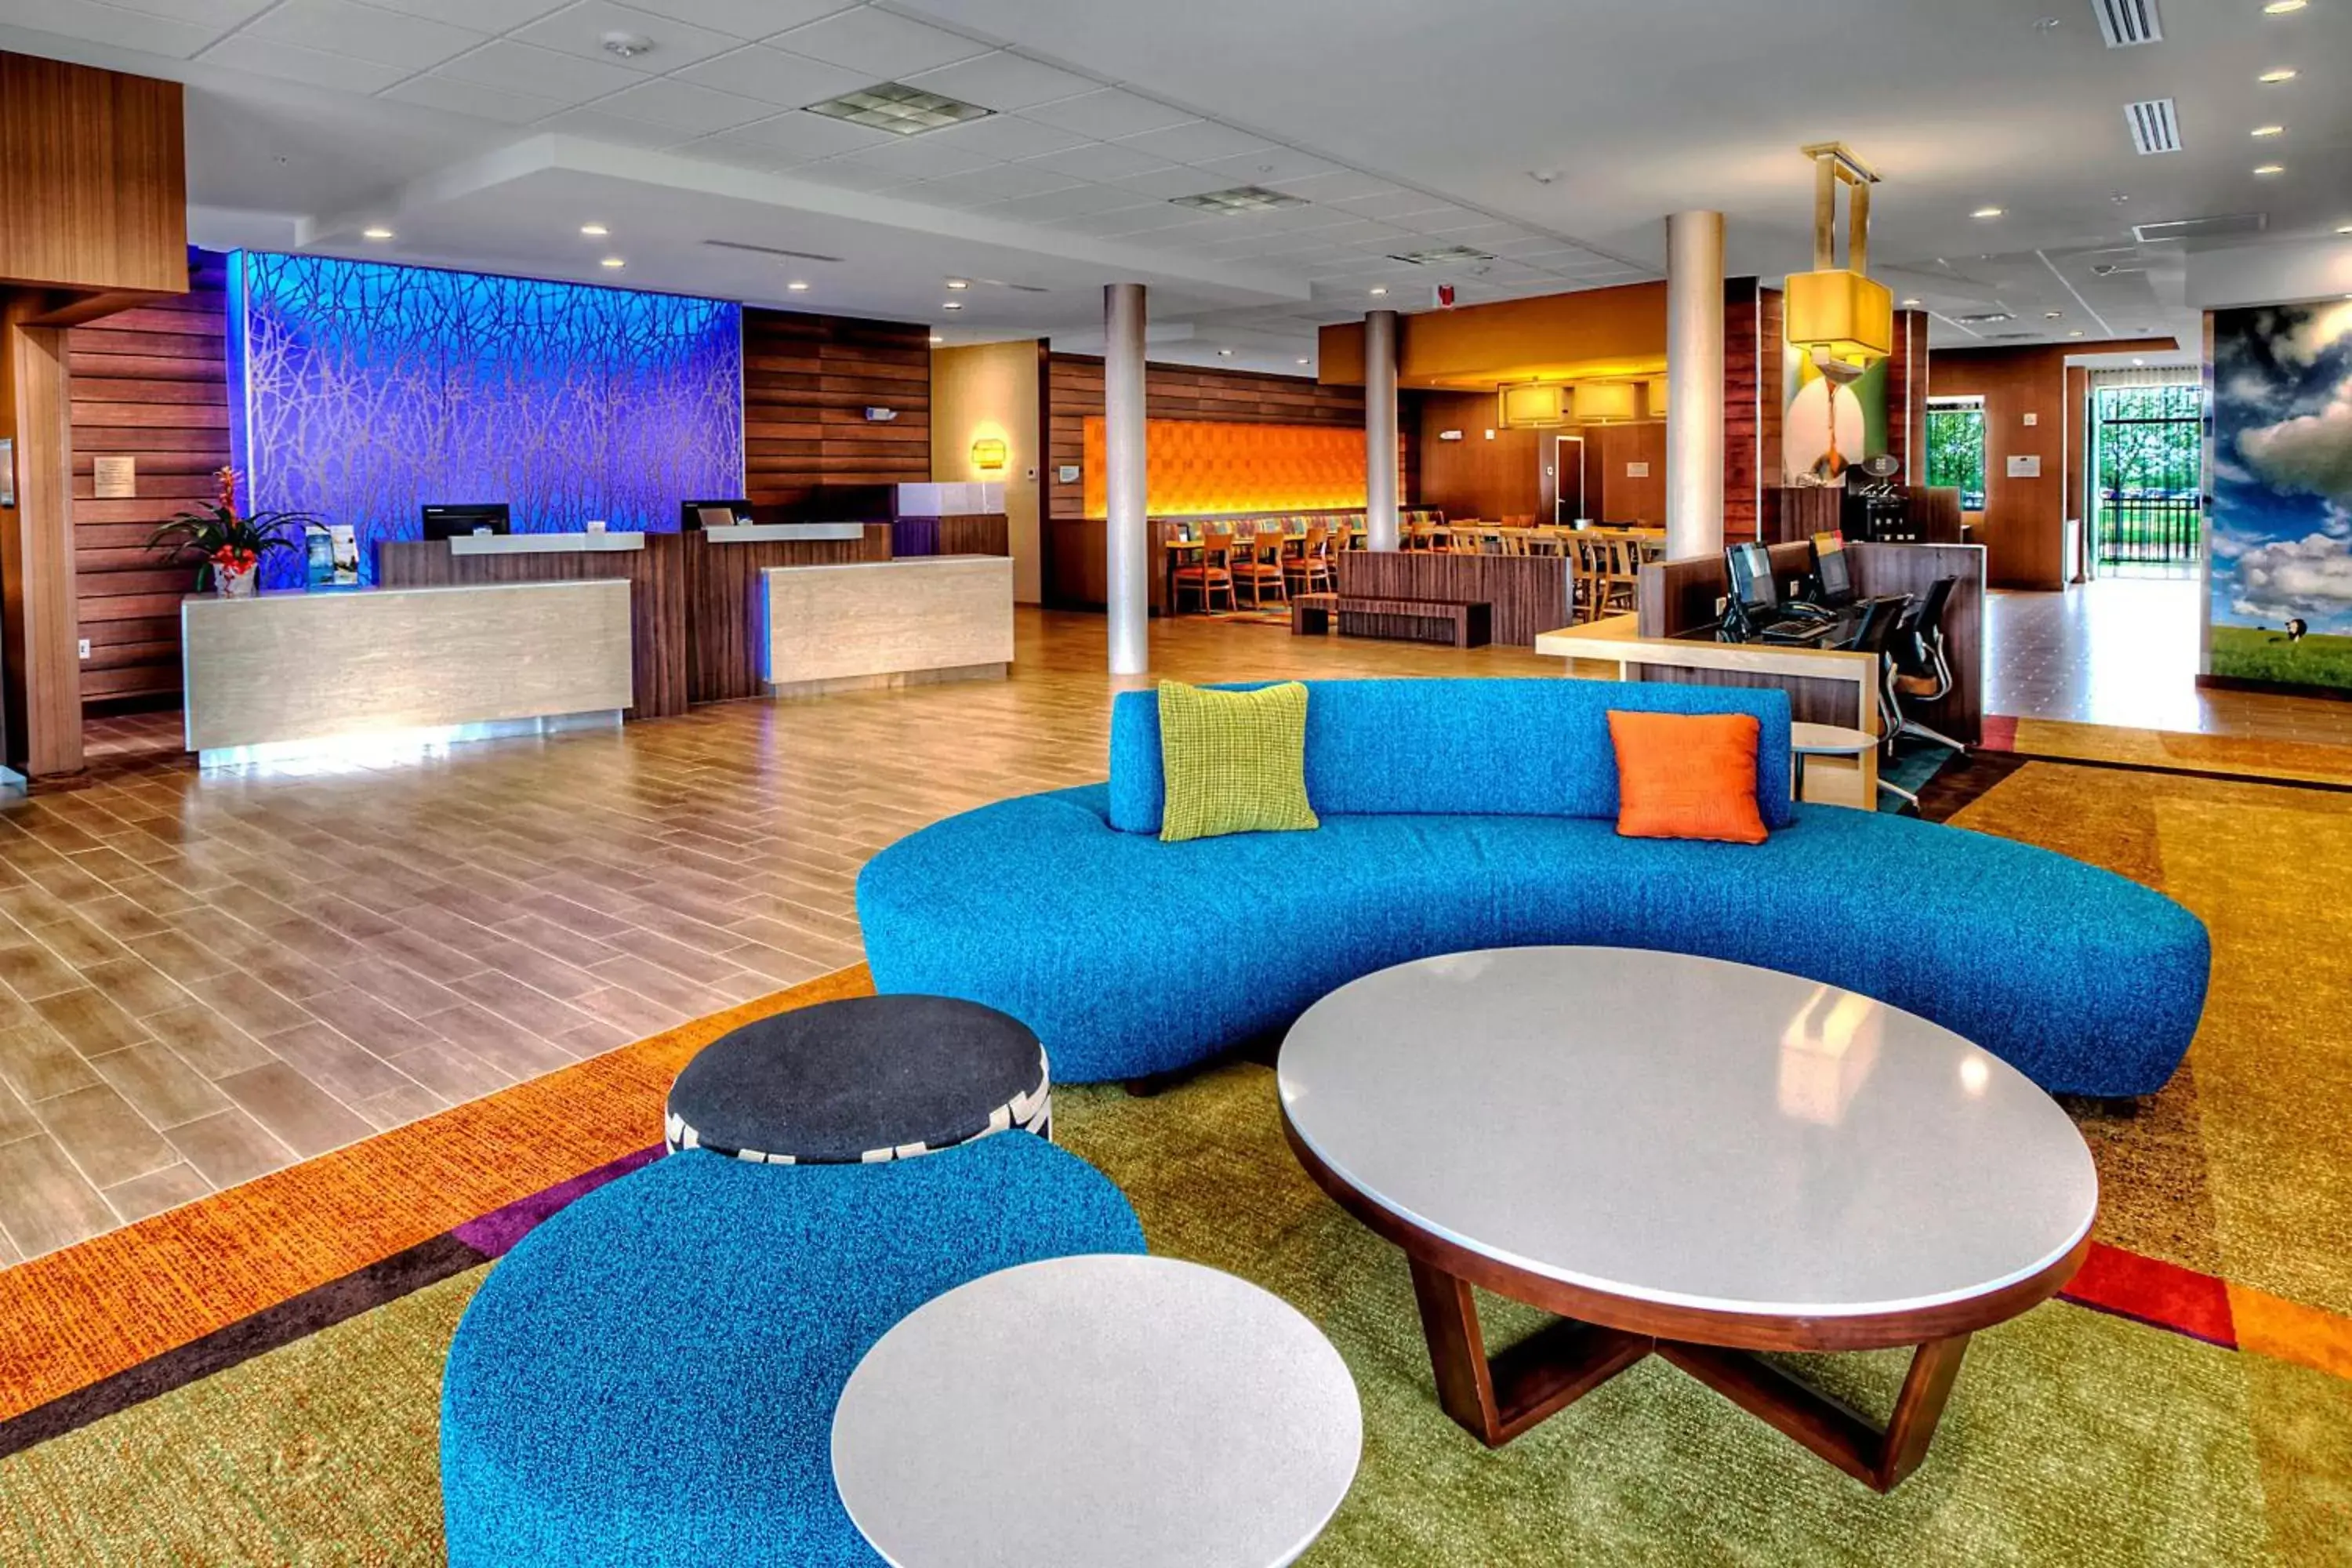 Lobby or reception in Fairfield Inn and Suites Oklahoma City Yukon